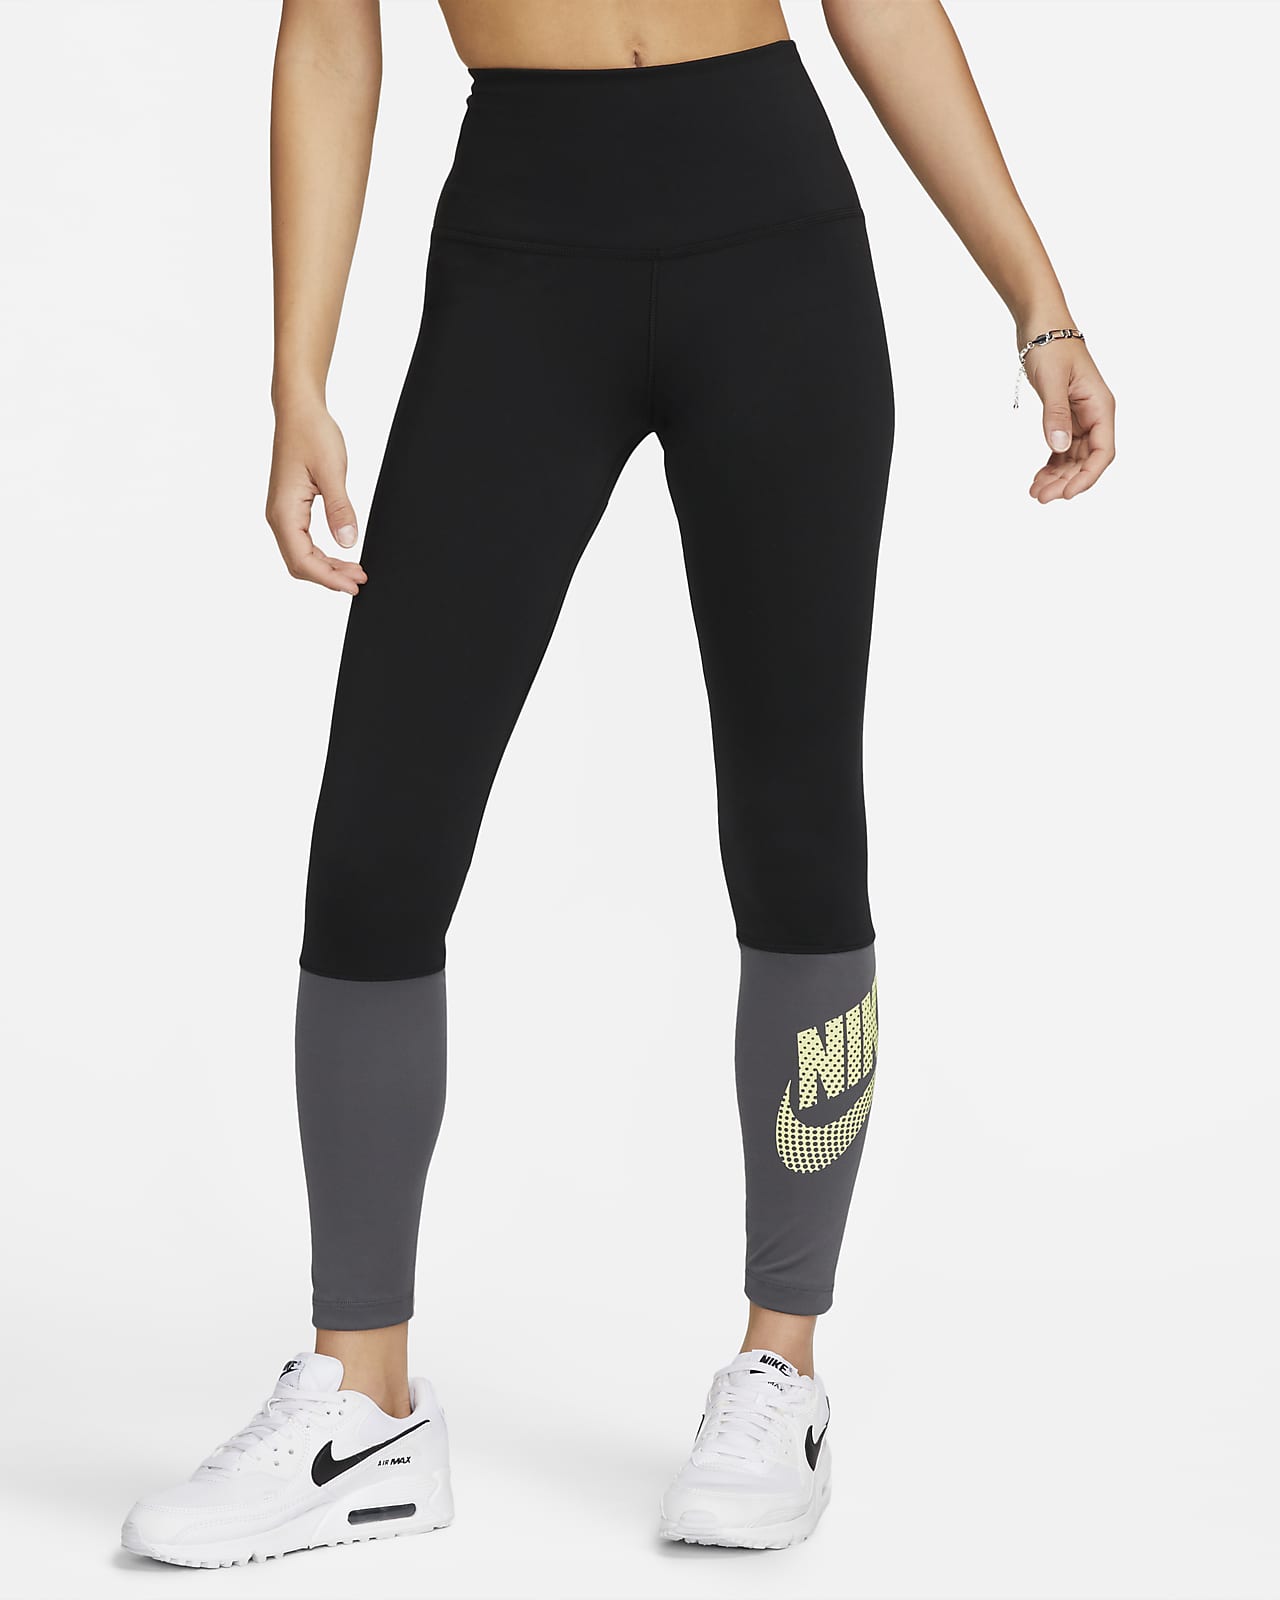 Legging de danse taille haute Nike One pour femme